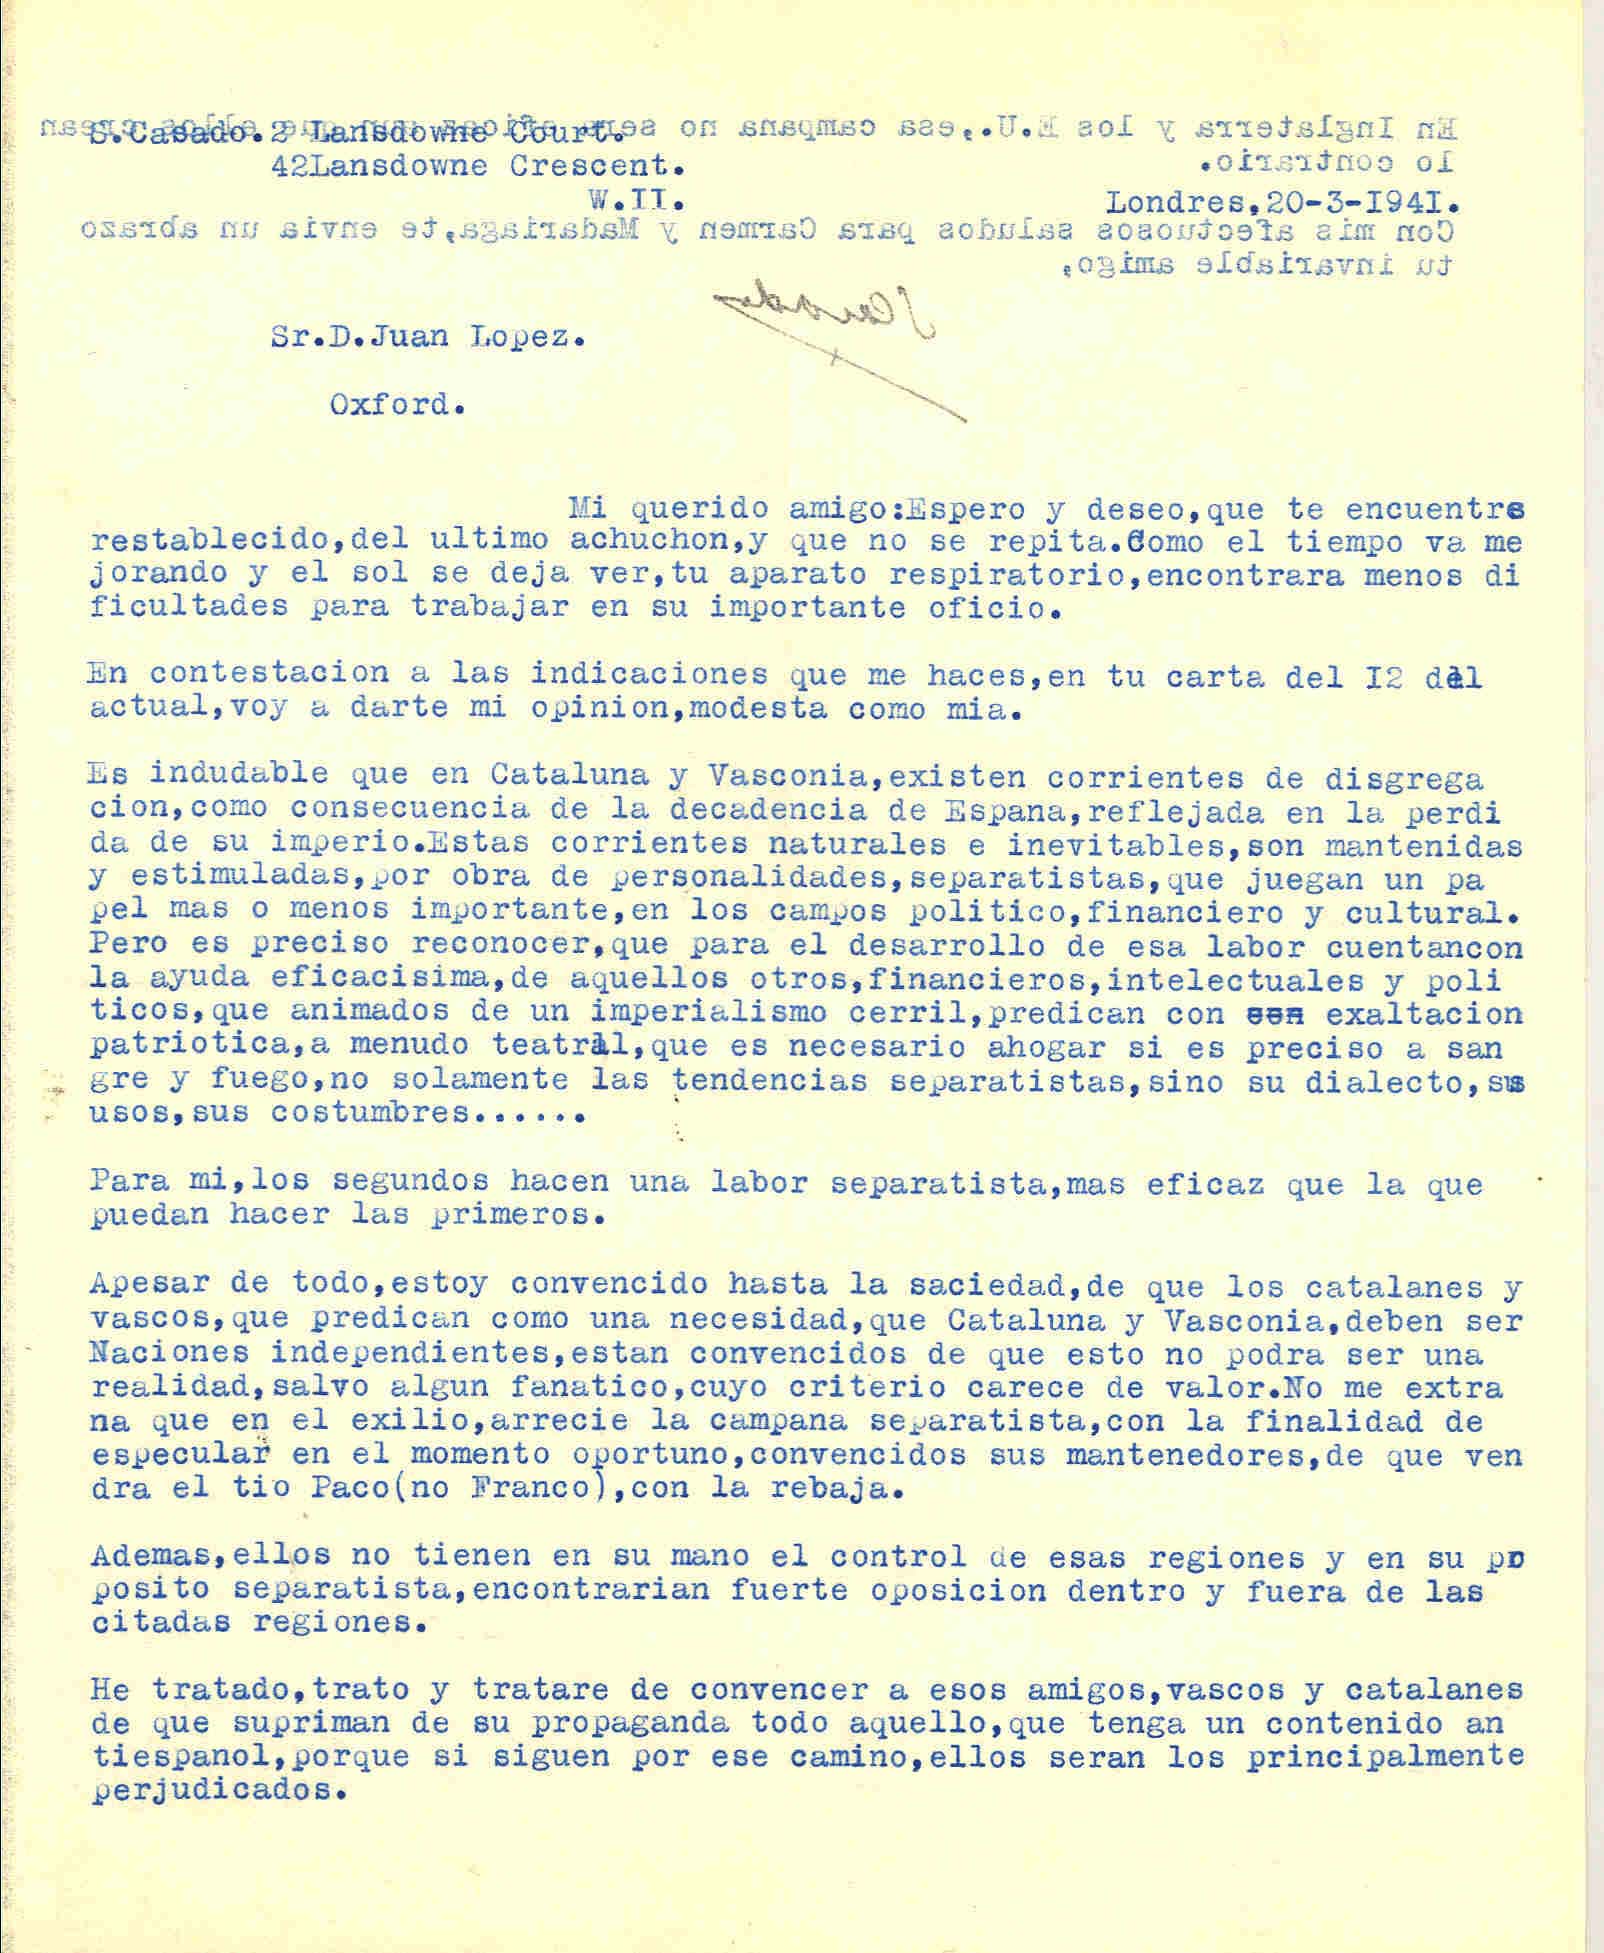 Carta de Segismundo Casado opinando sobre la labor separatista realizada por vascos y catalanes.